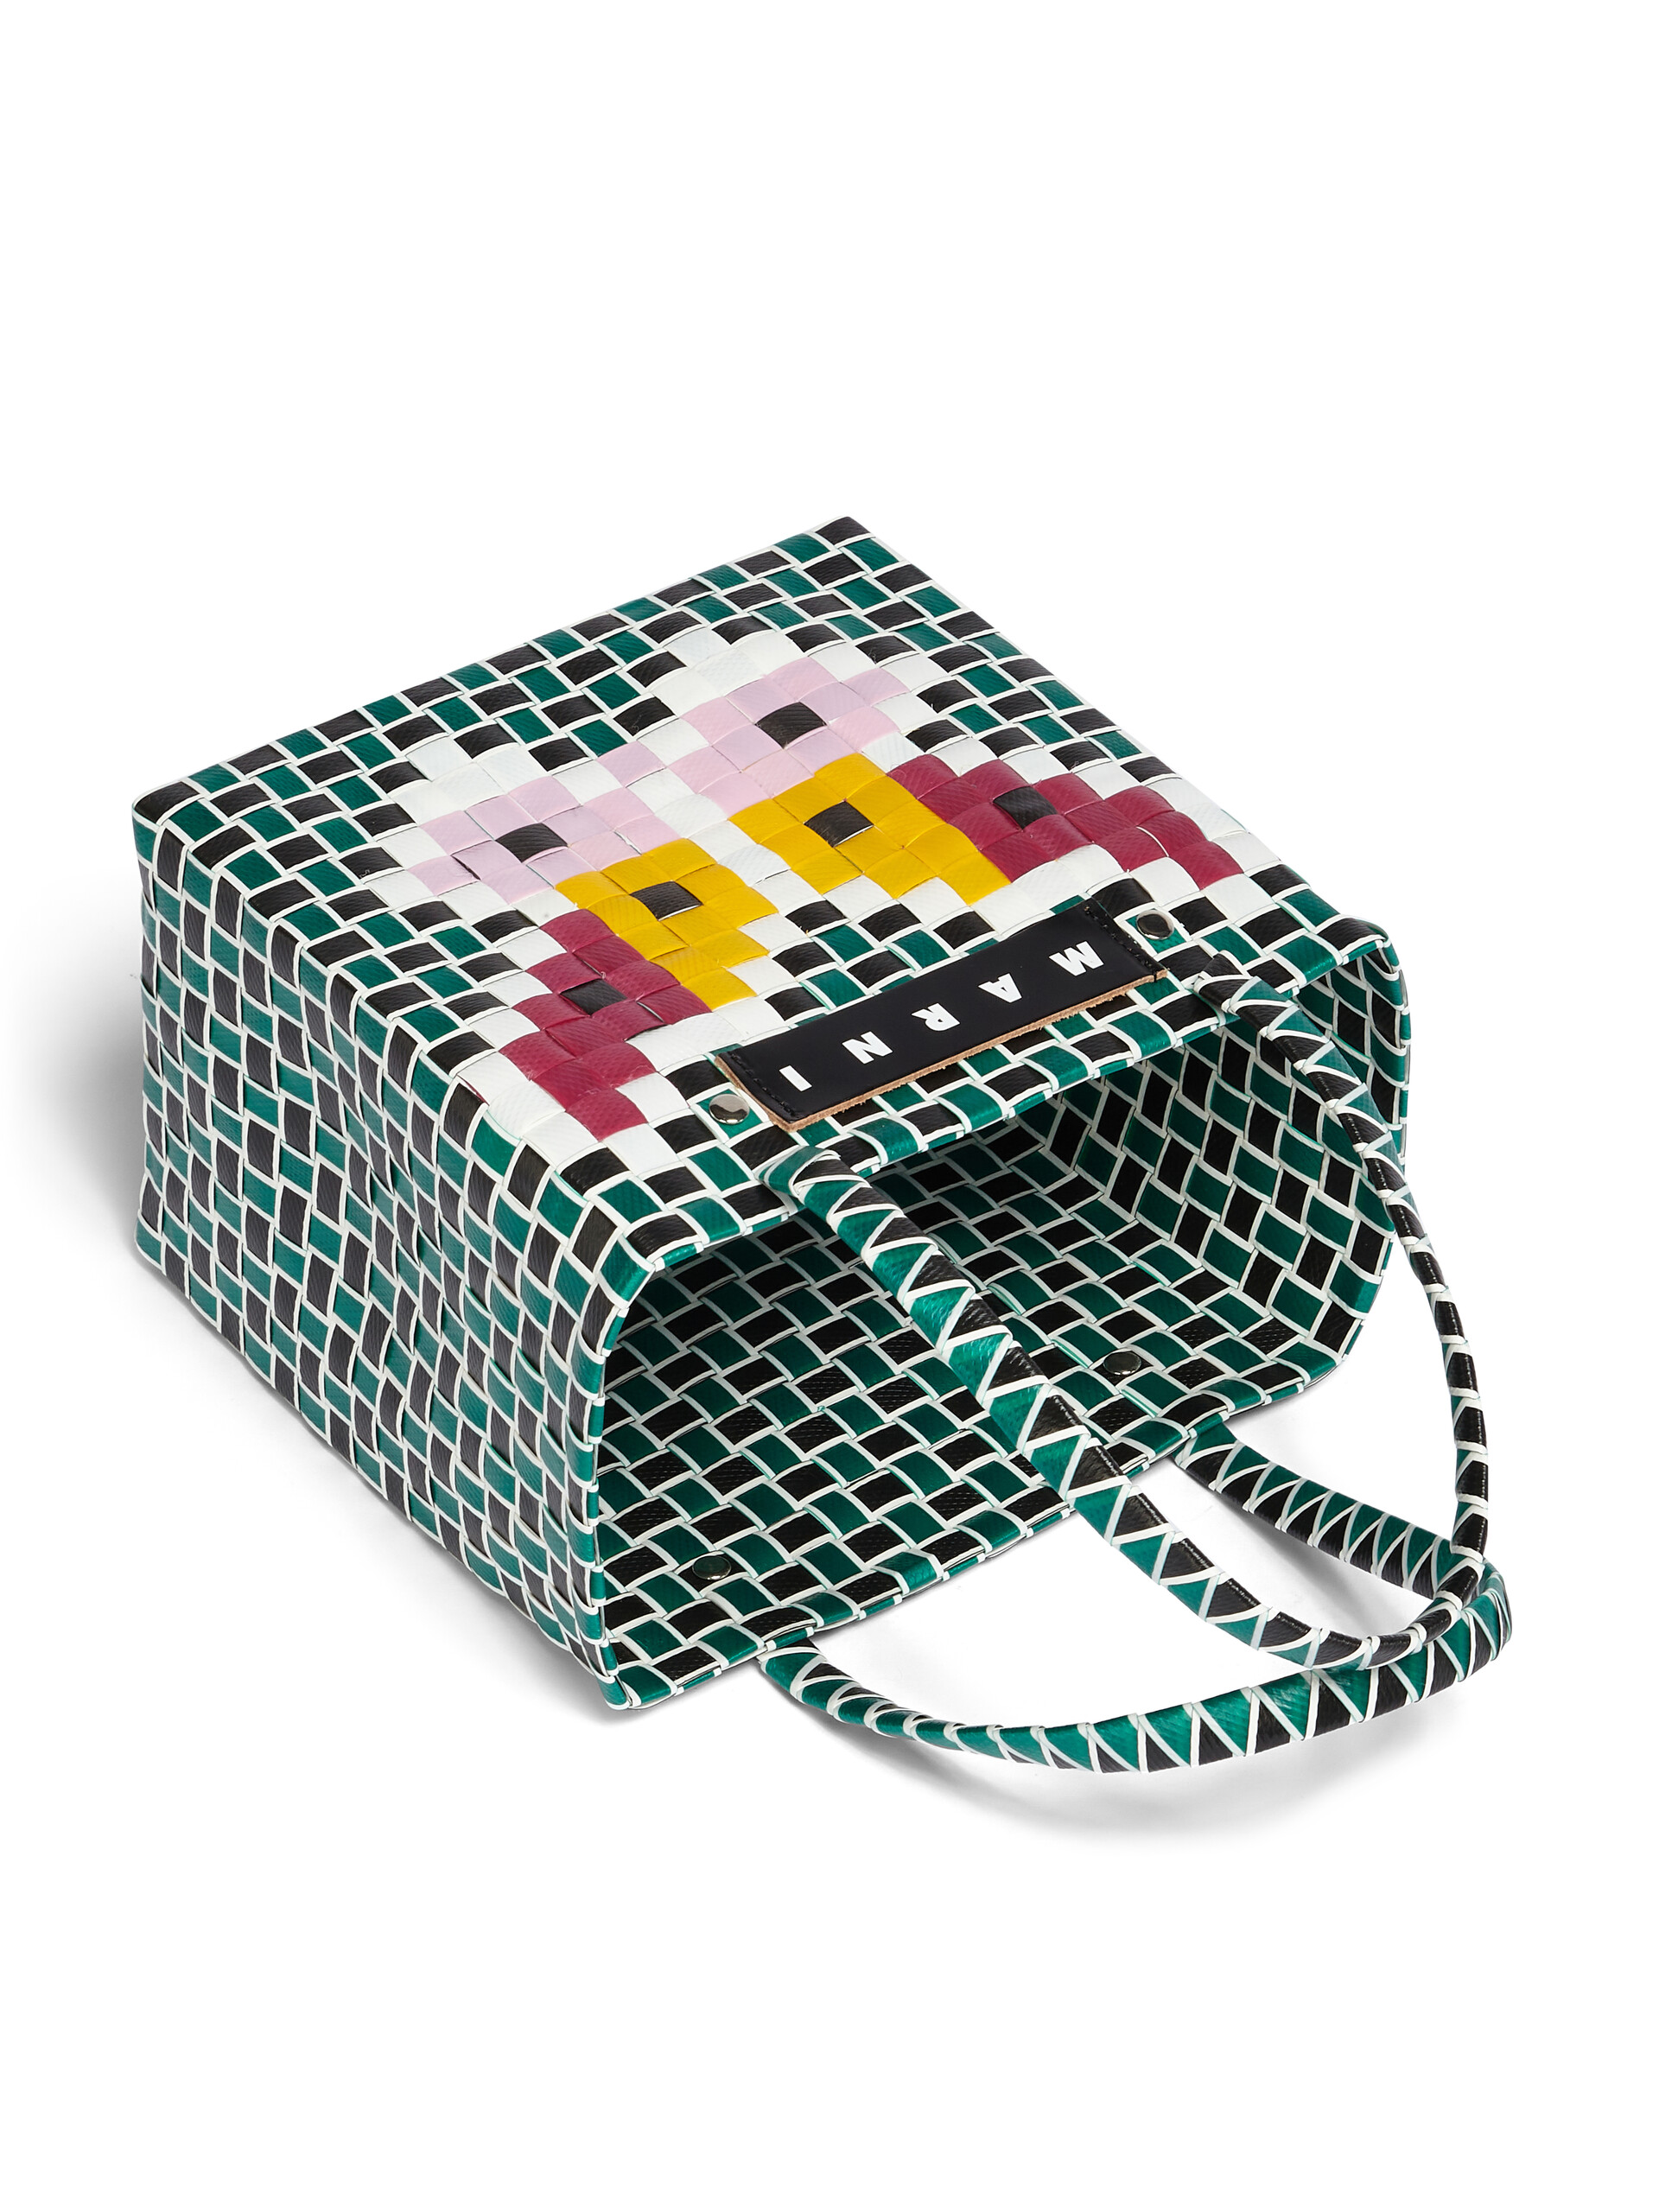 MARNI MARKET FLOWER MINI BASKET bag in green butterfly motif - Bags - Image 4